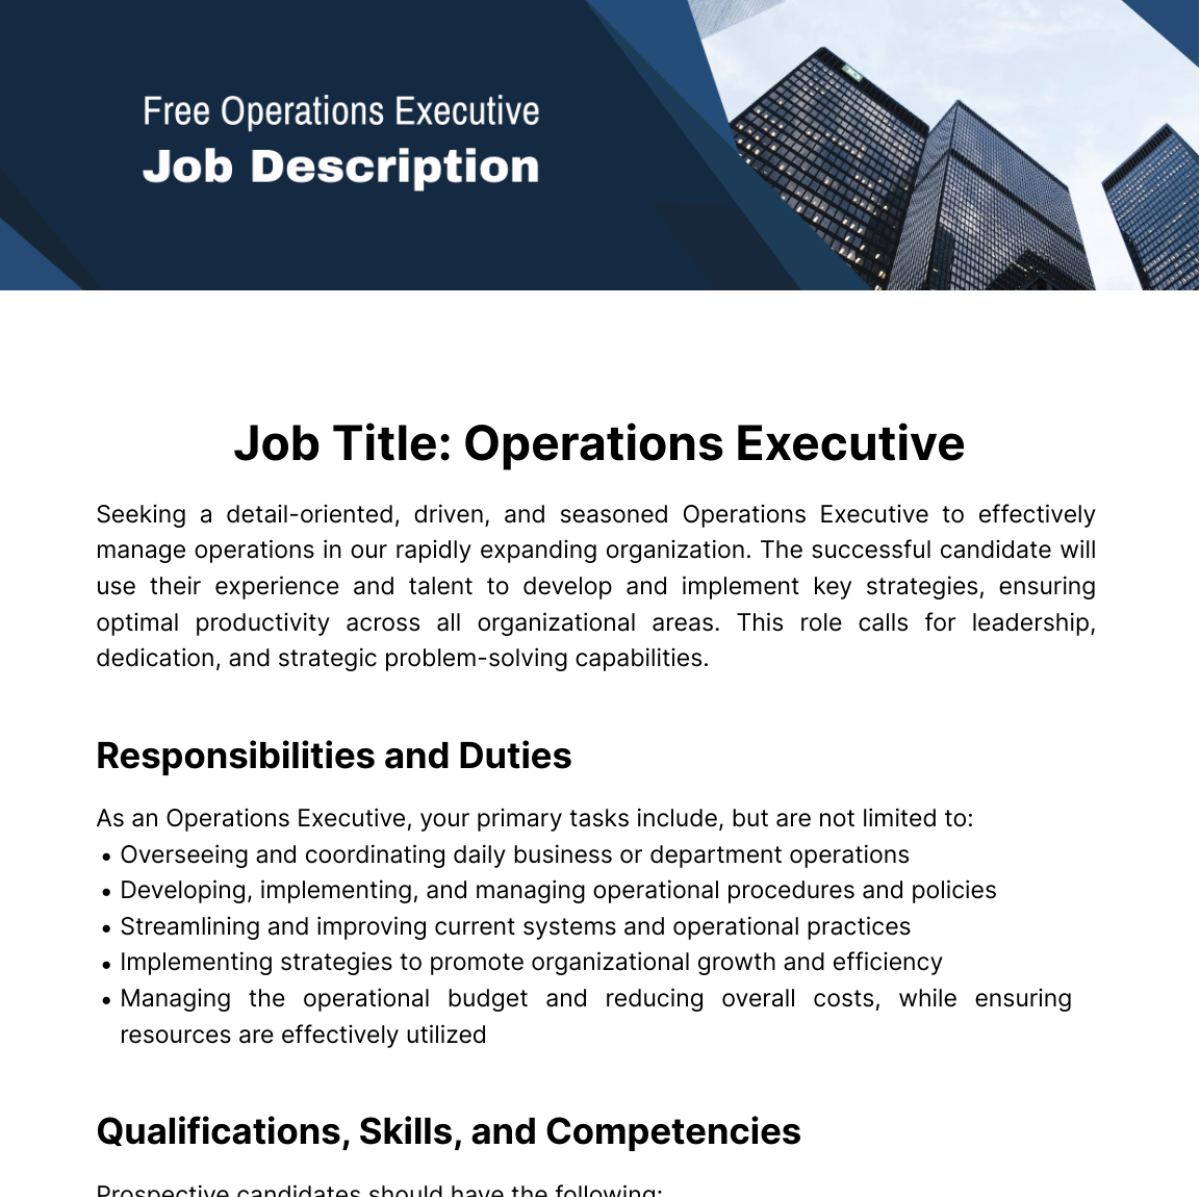 Free Operations Executive Job Description Template